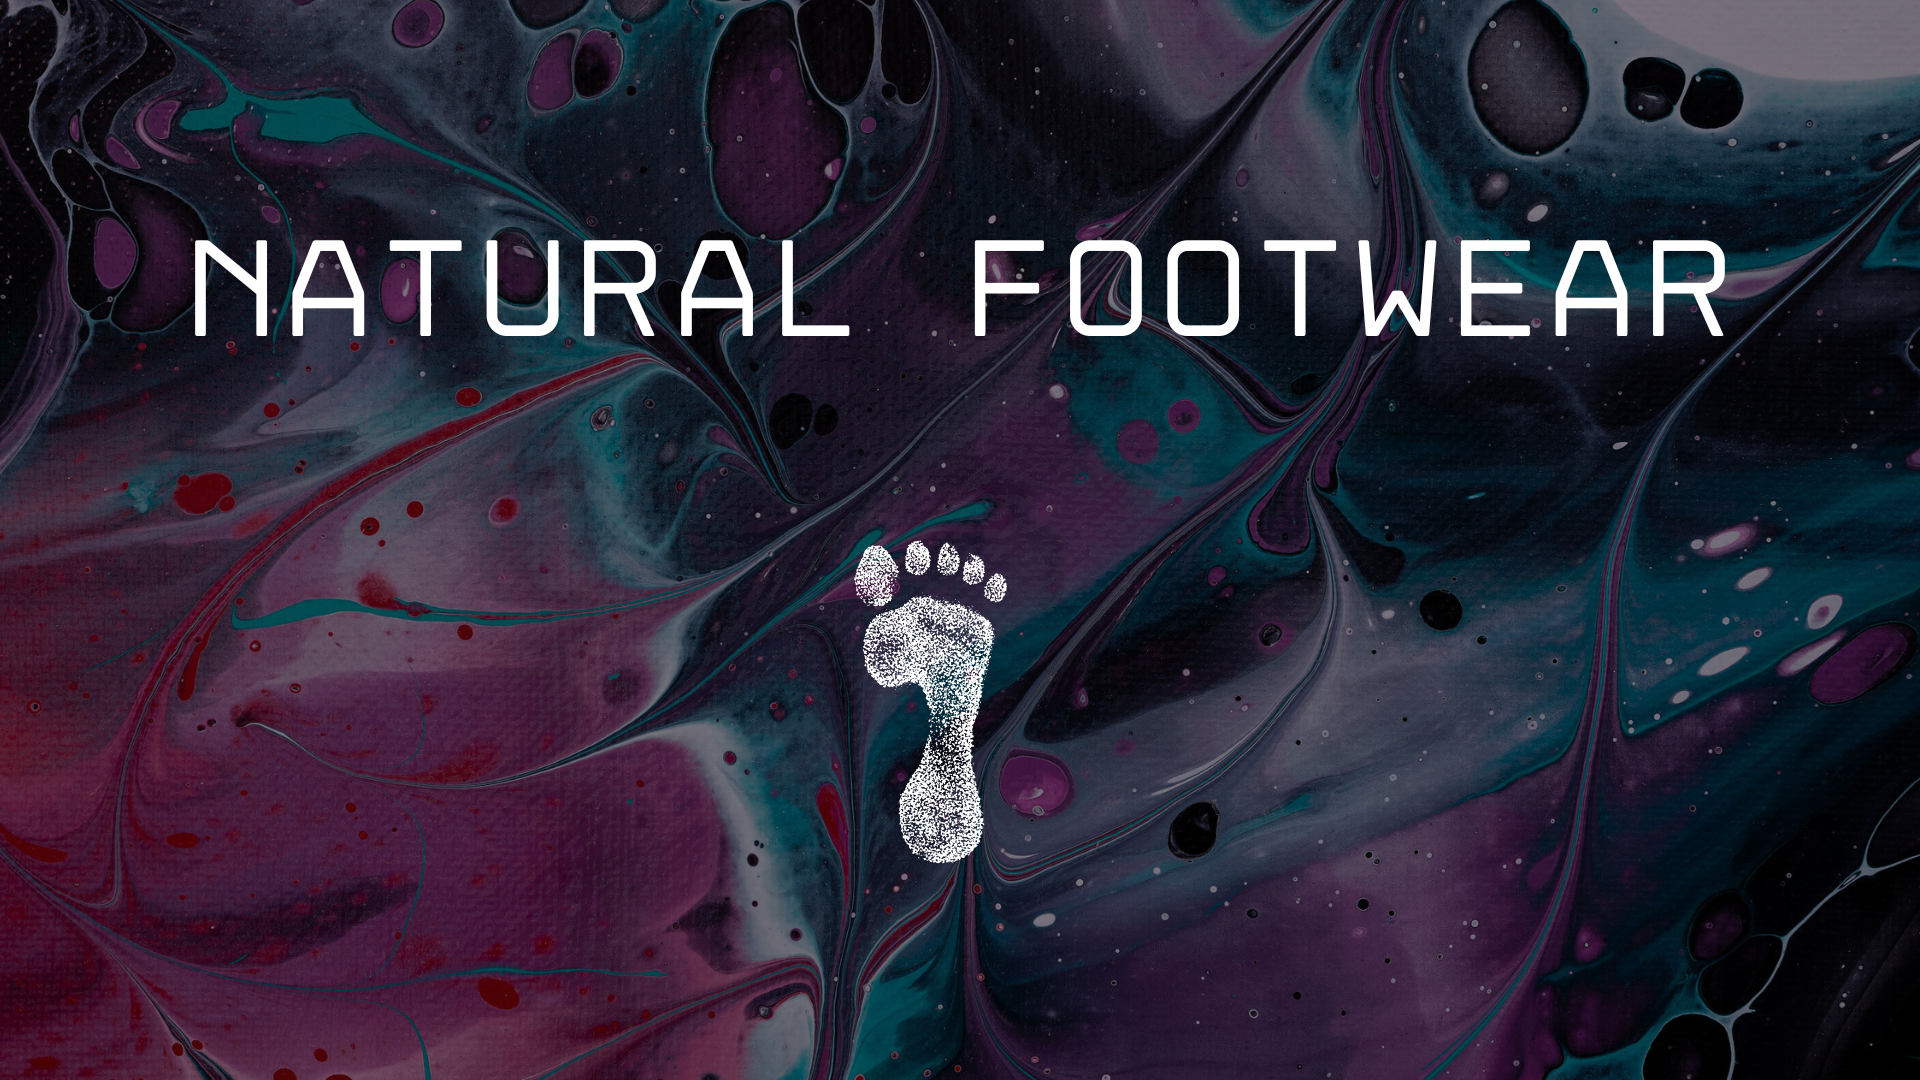 Natural footwear